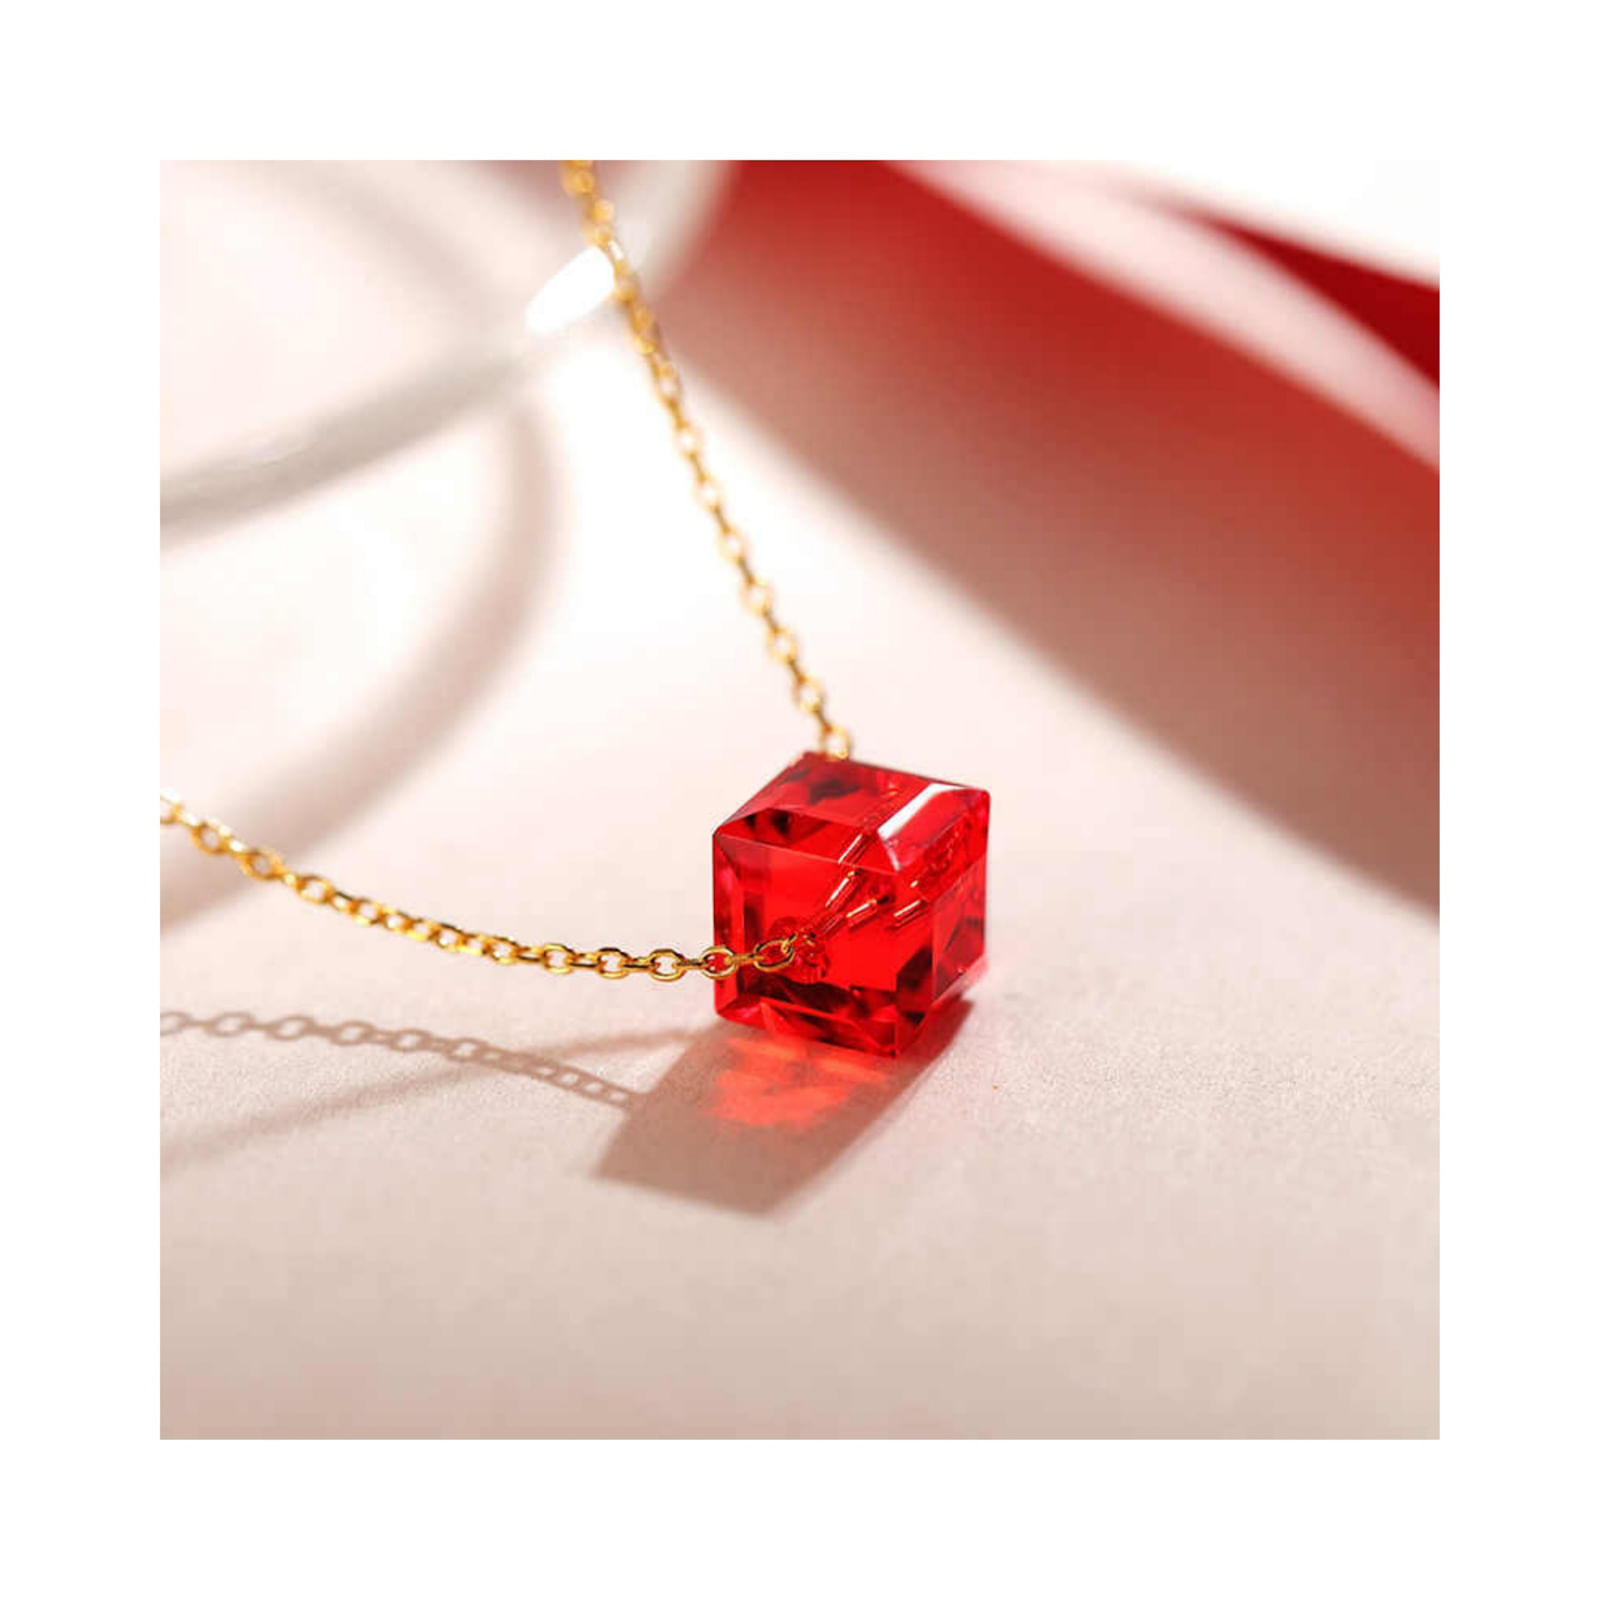 Collar Sifrah Shop para Mujer dije Cubo Rojo Swarovski Dorado